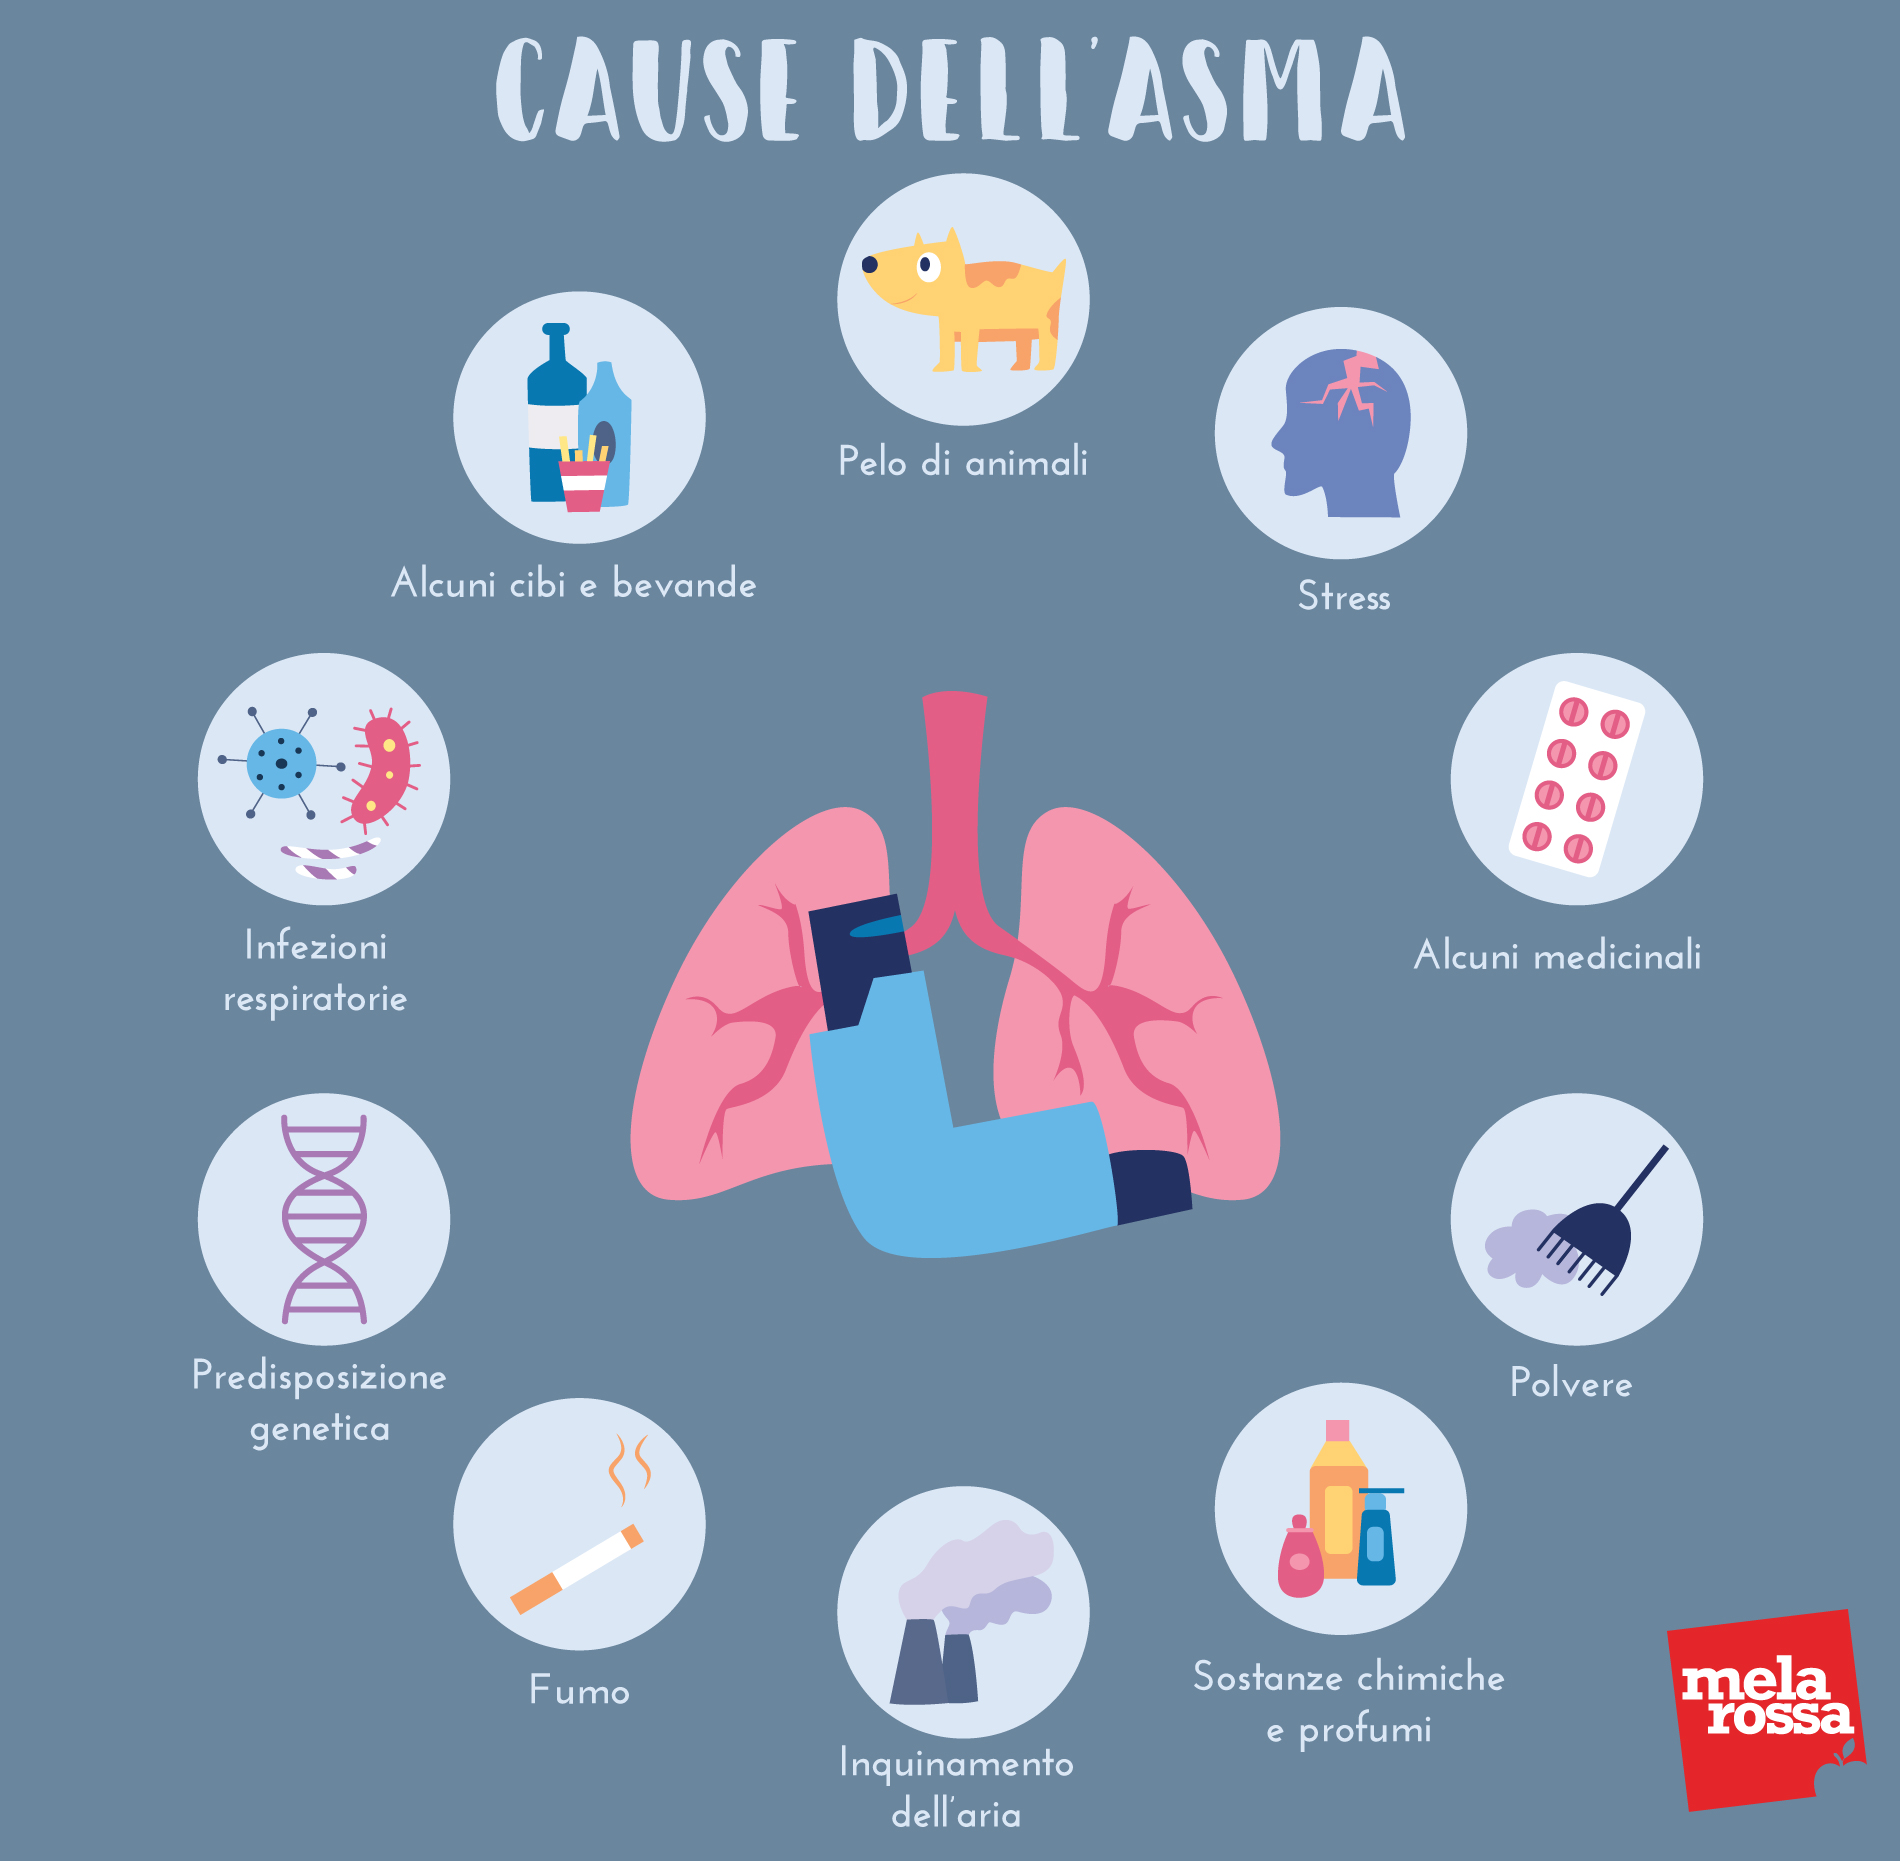 asma: cause